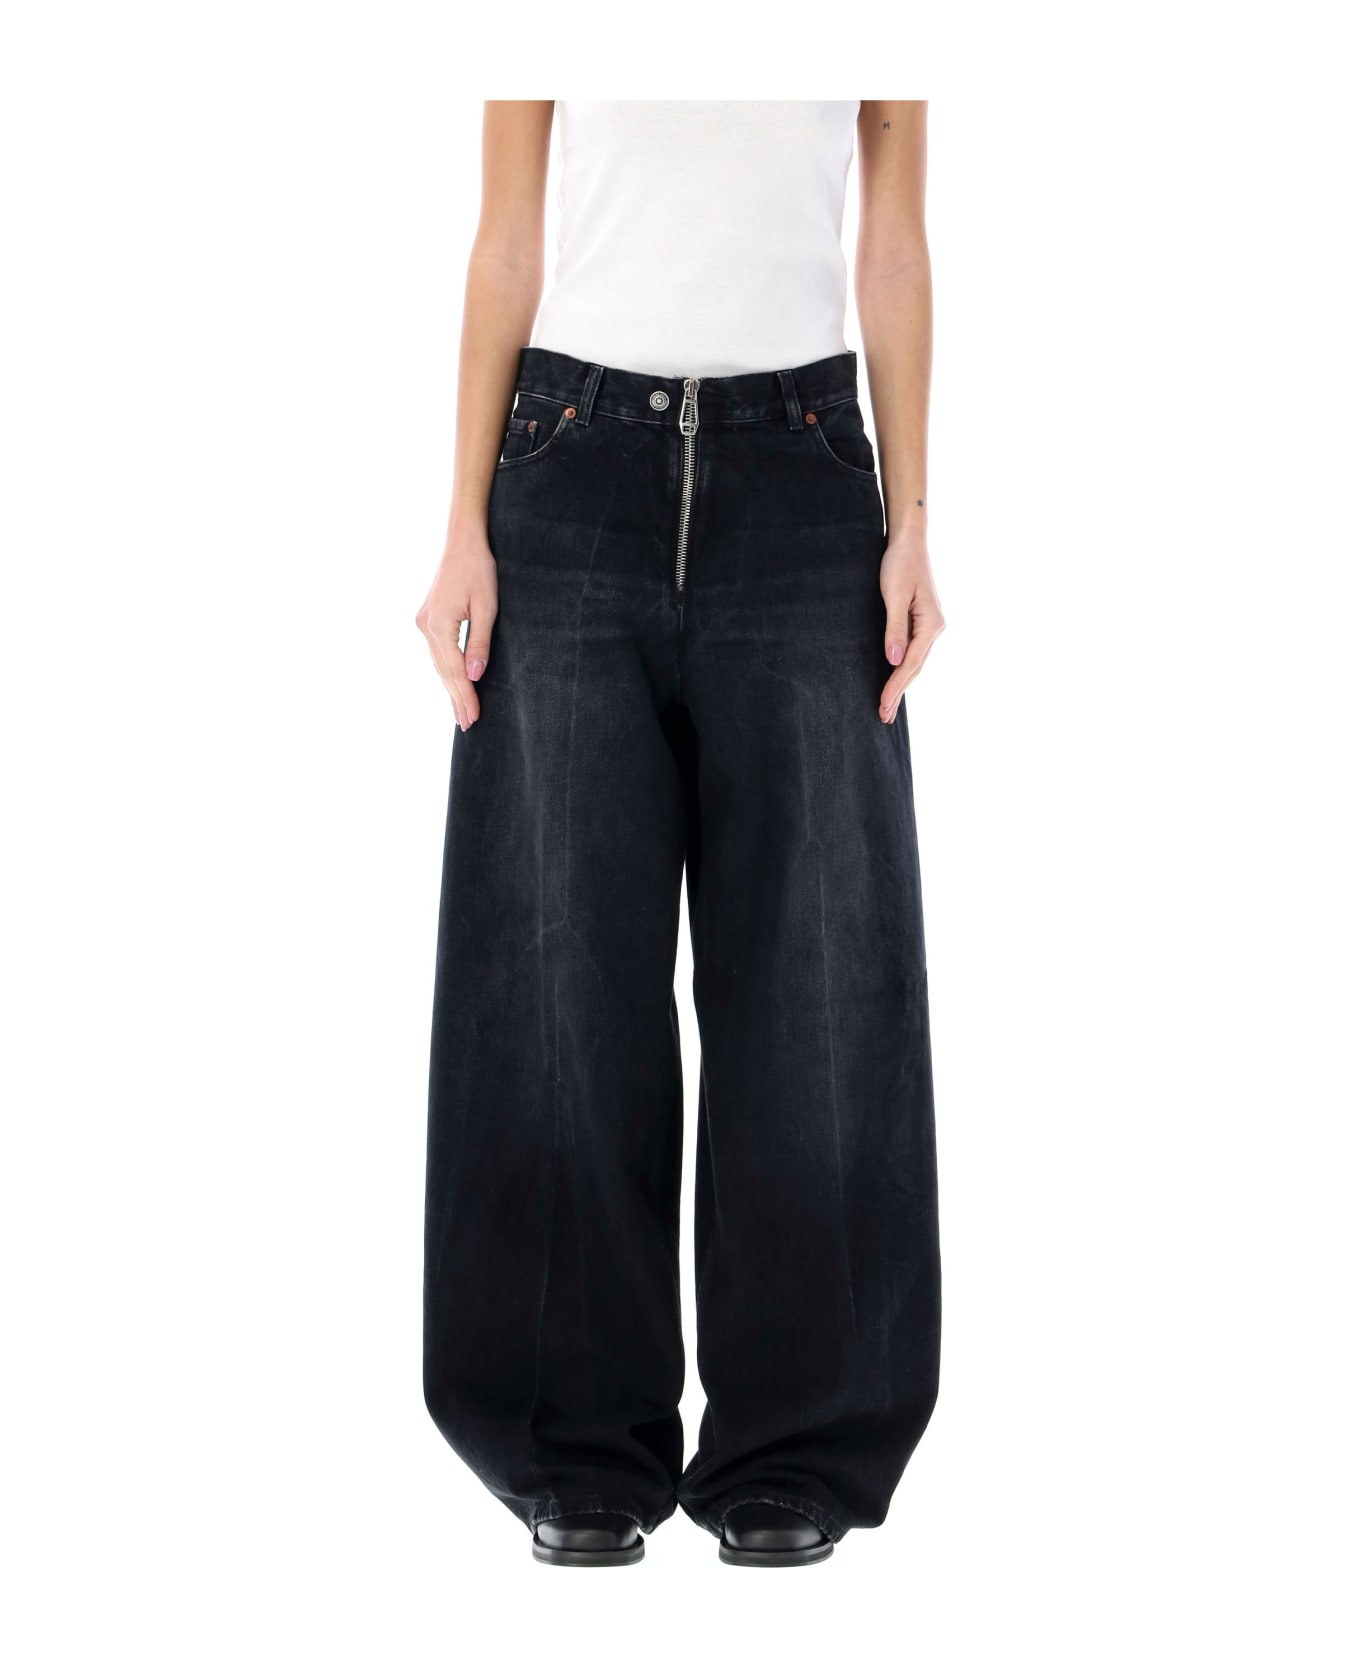 Haikure Bethany Zipped Jeans - BASSANO BLACK デニム